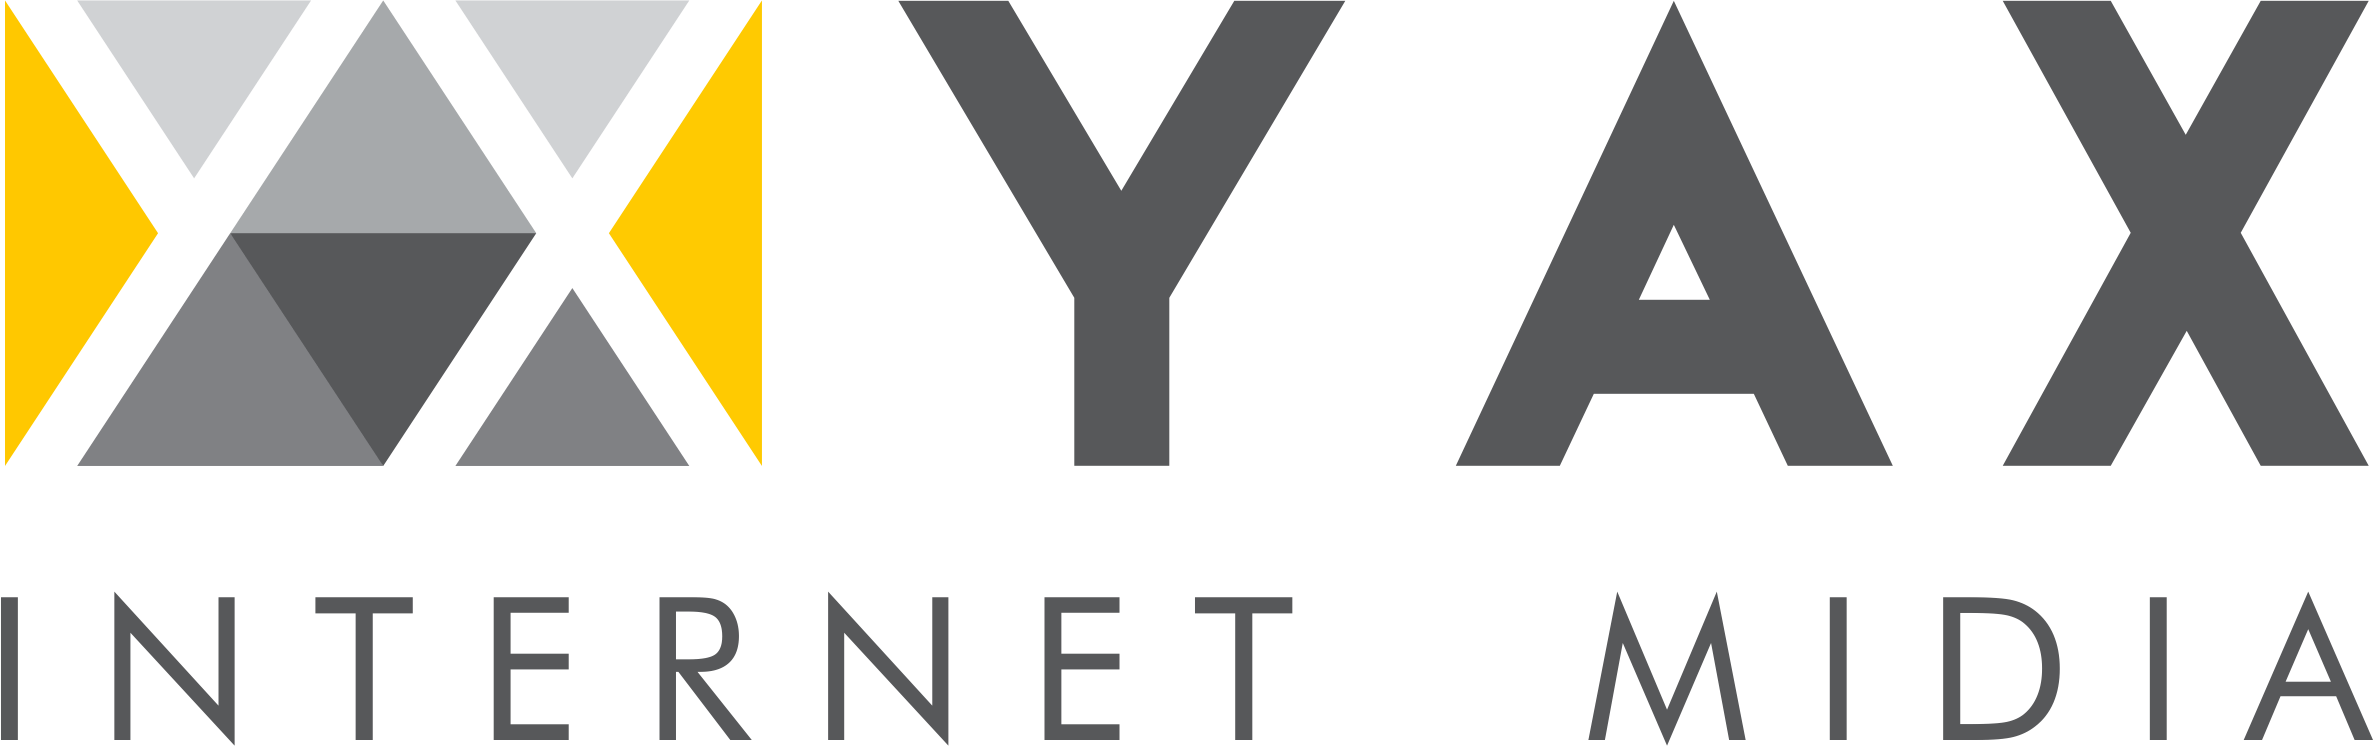 Yax Internet Mídia